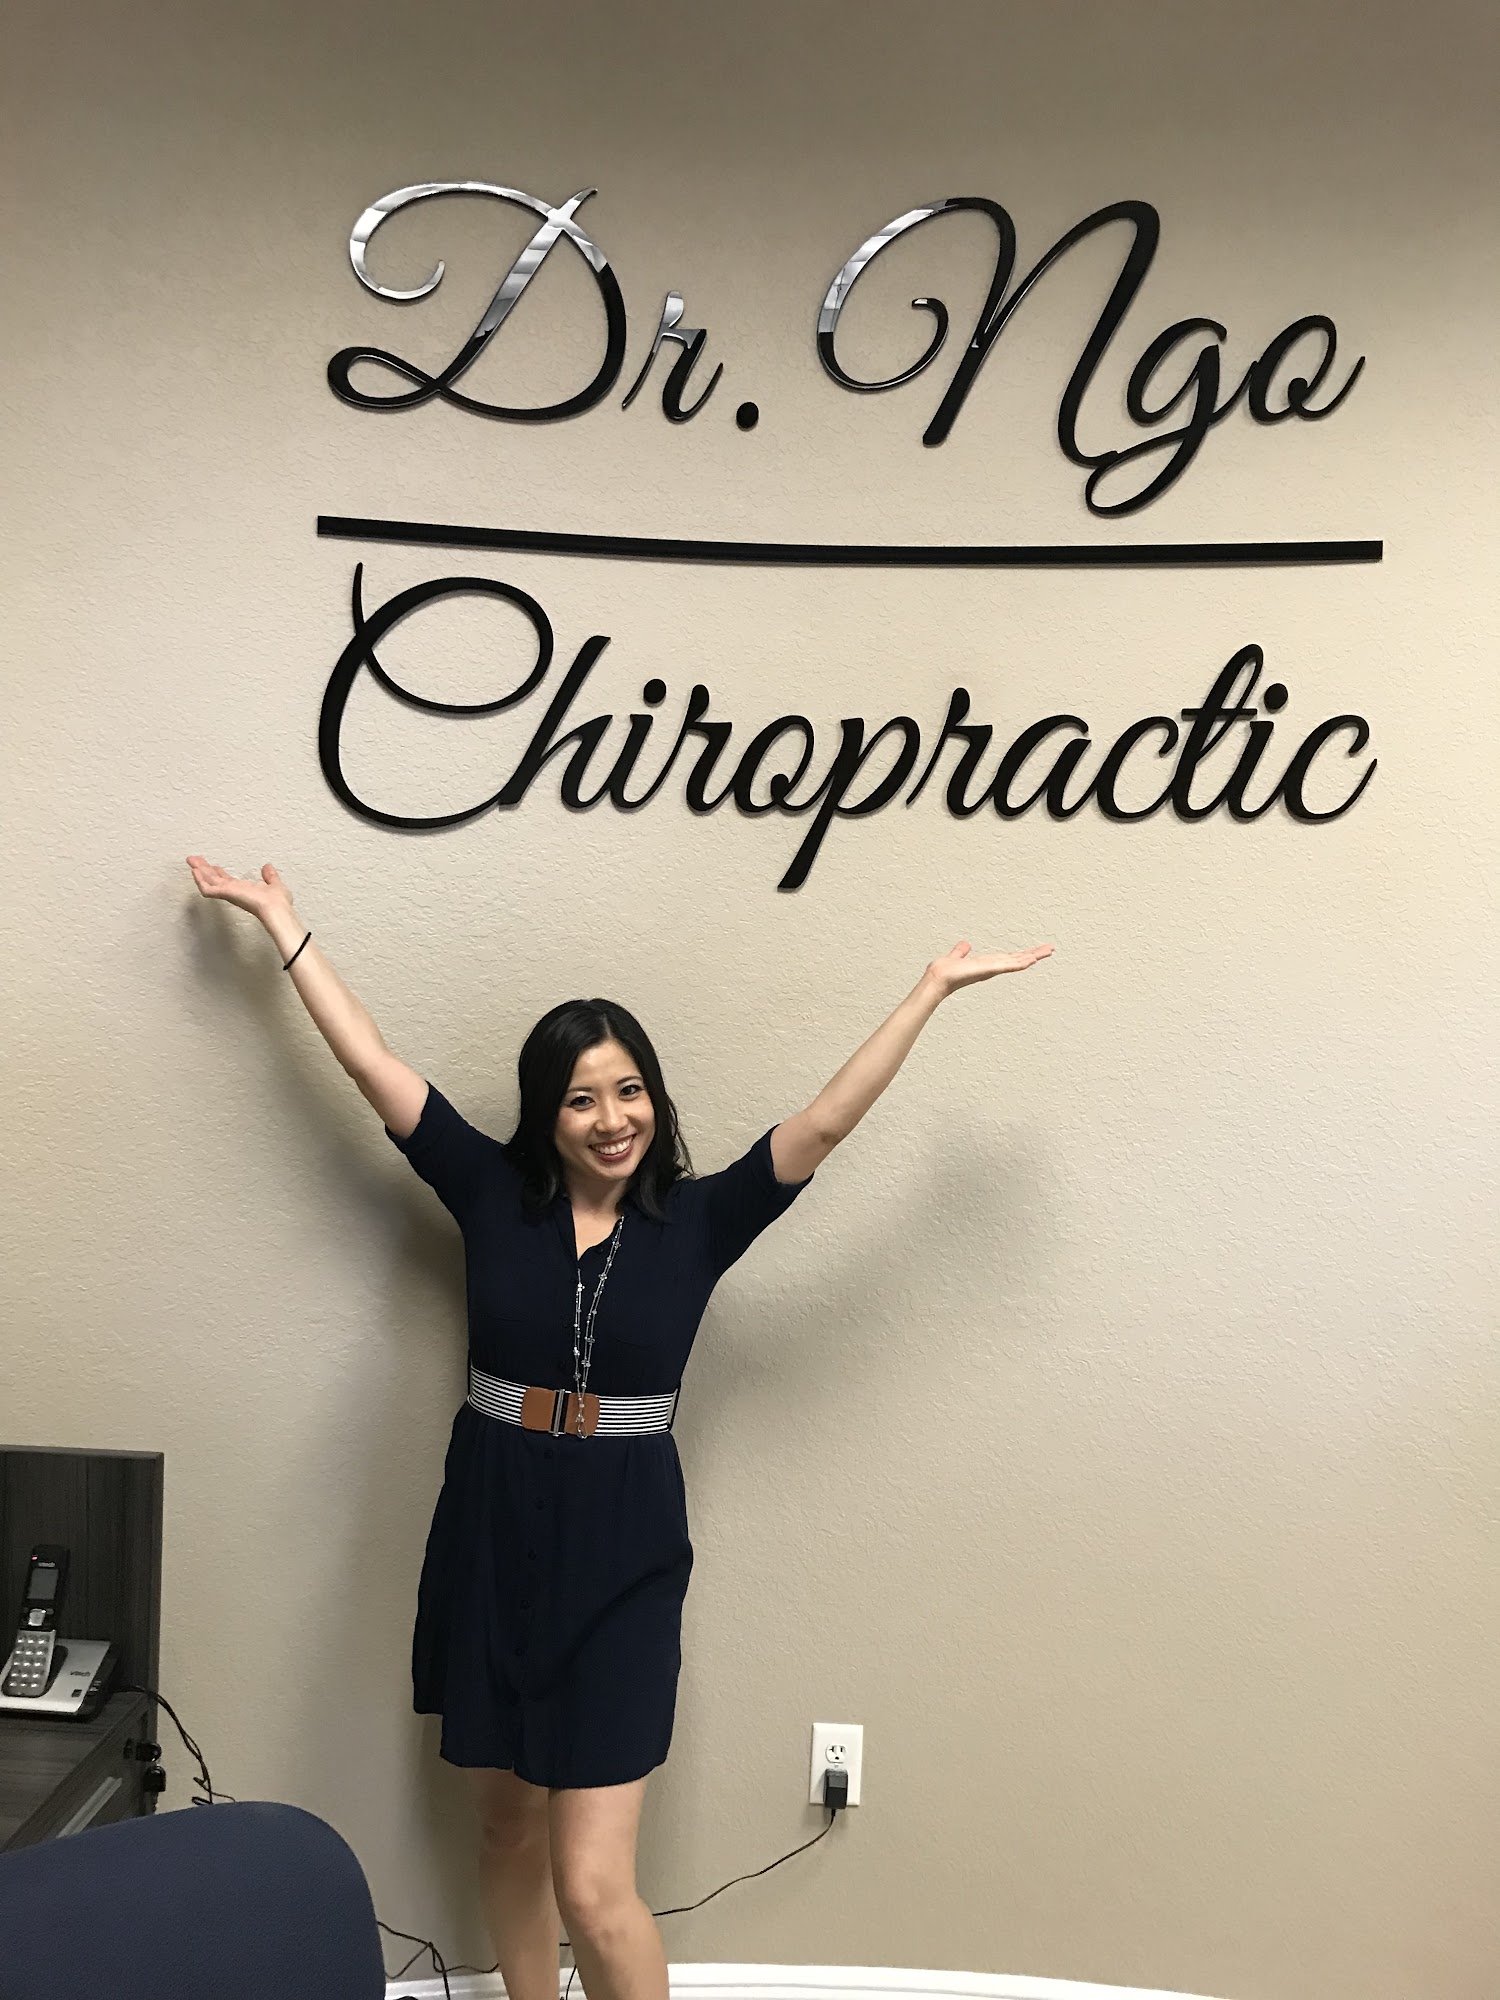 Dr. Duyen Ngo Chiropractic - Upper Cervical Chiropractor